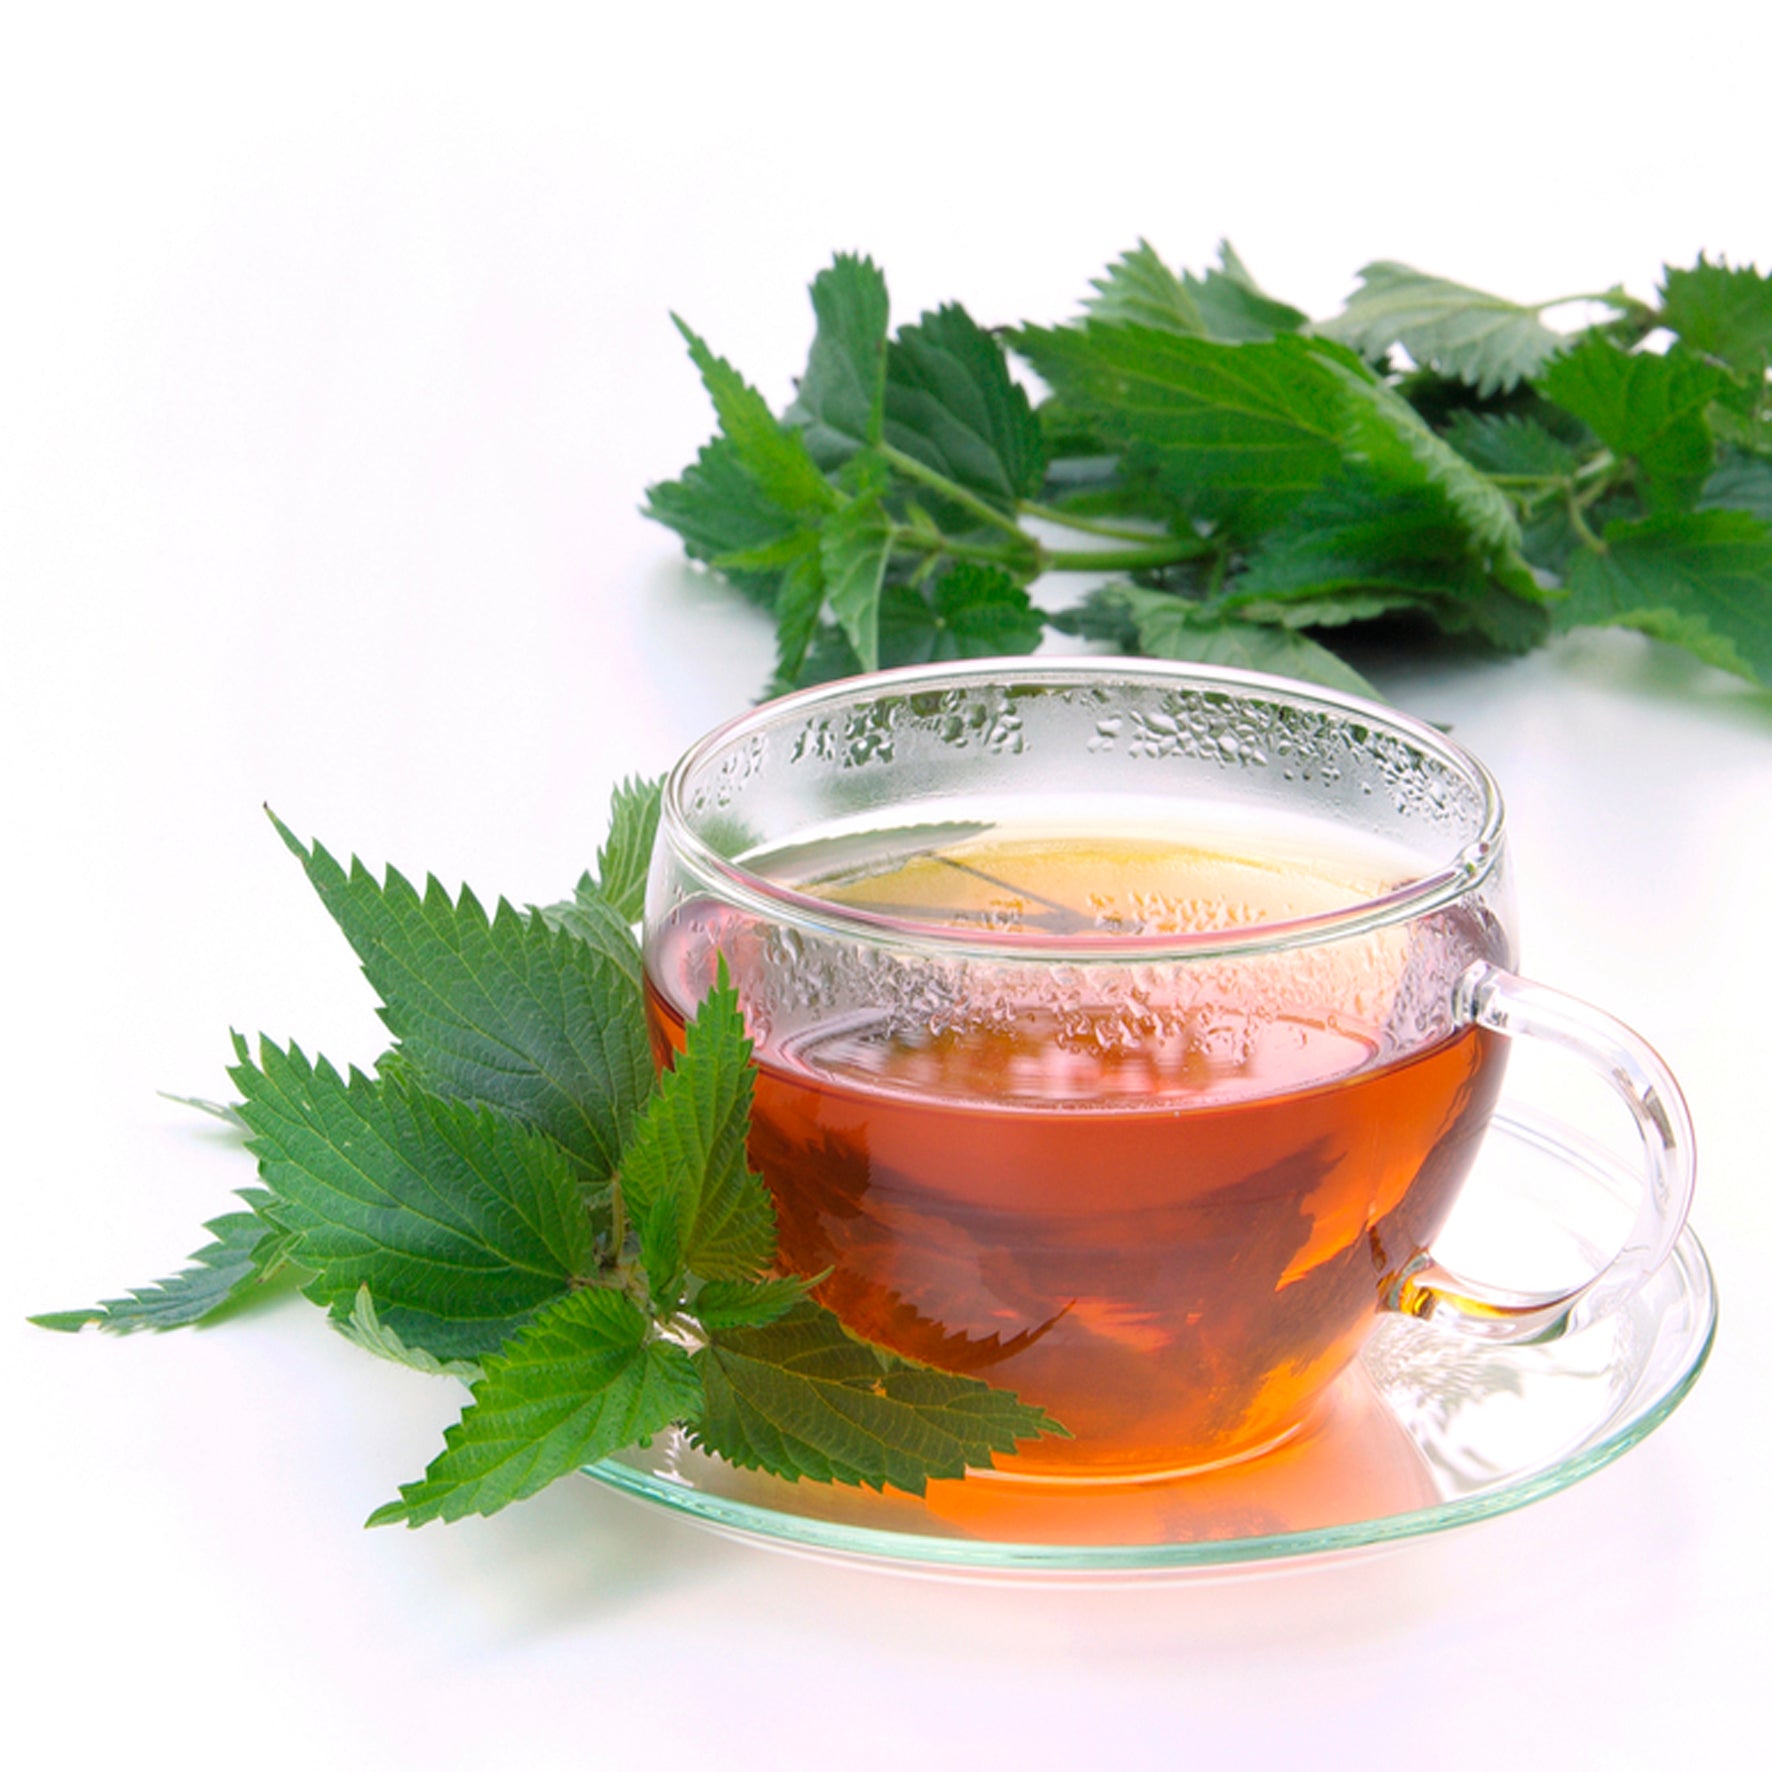 Brennnesselblätter-Tee 100g: Gesundheitsfördernde Wirkung und köstlicher Geschmack